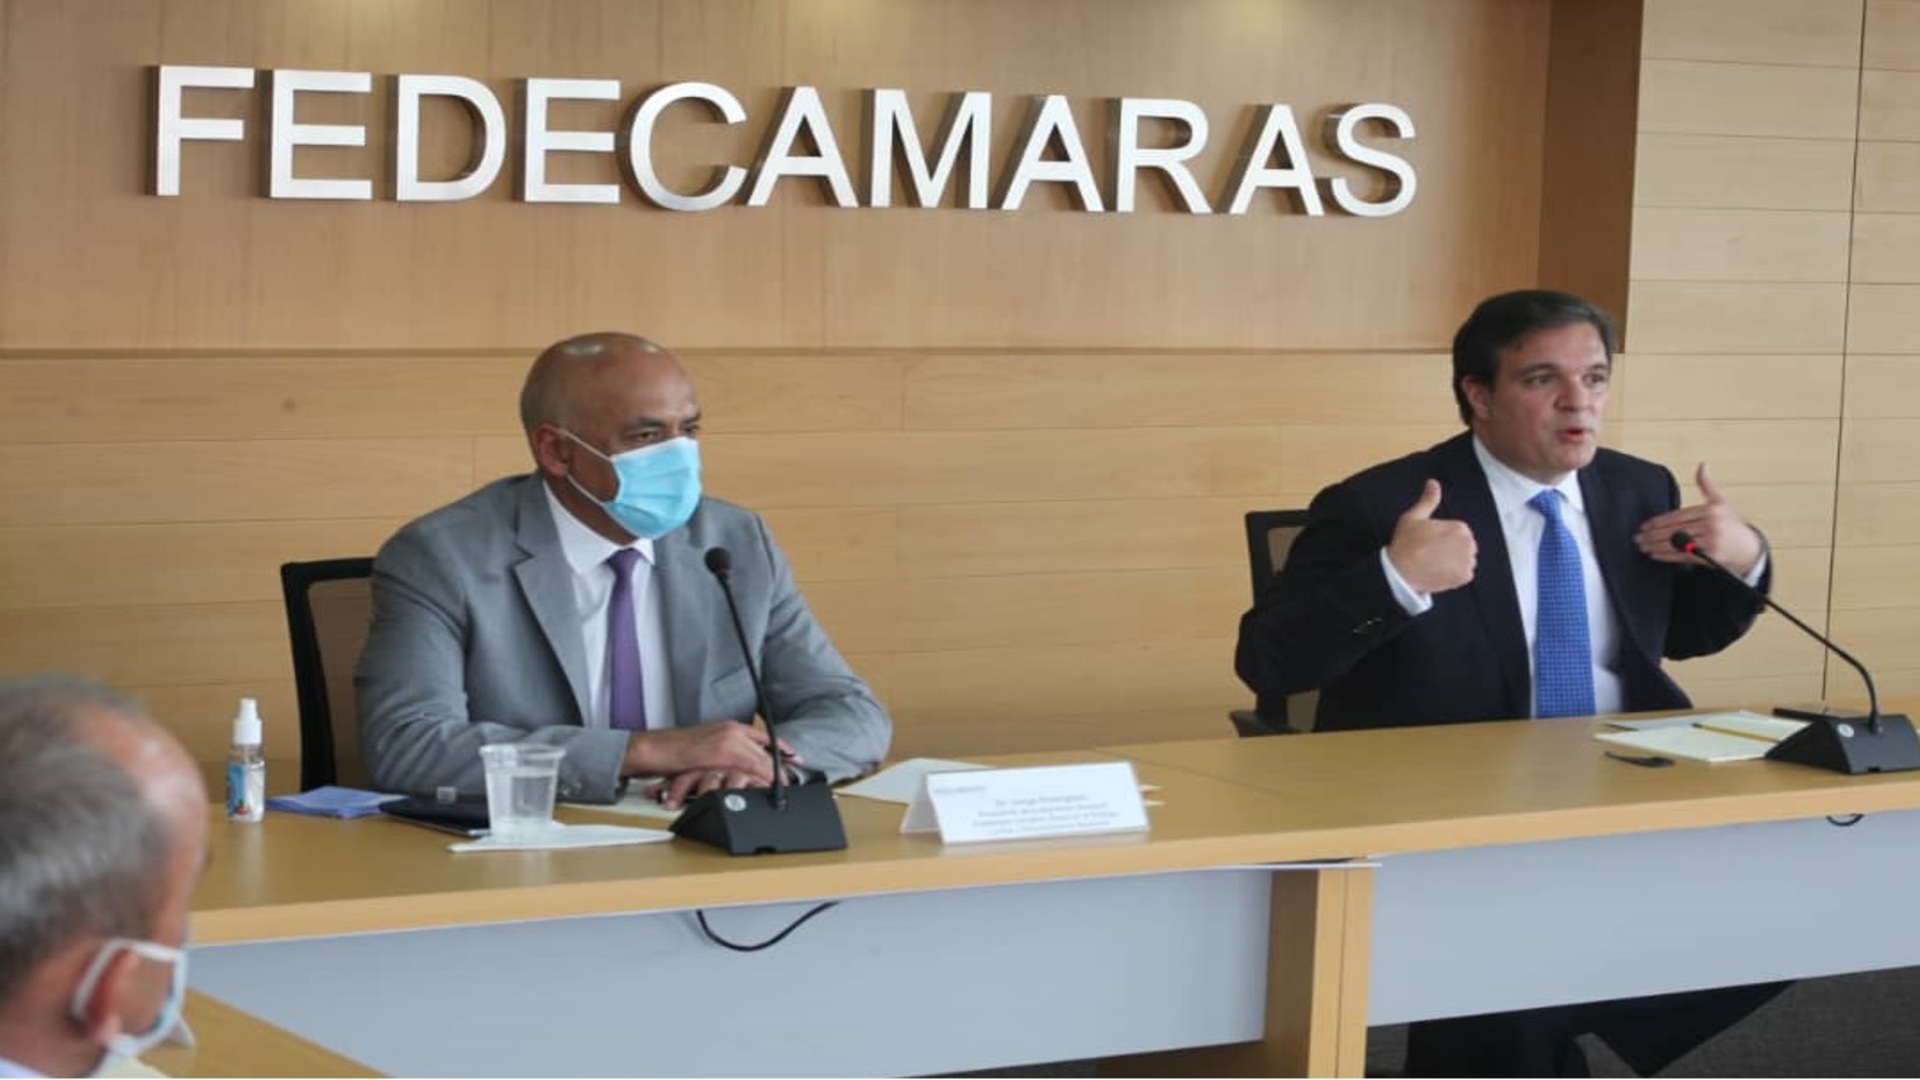 Jorge Rodríguez tras reunión con Fedecámaras: Aparecieron muchas ideas que nos permitirán acceder a la vacunación